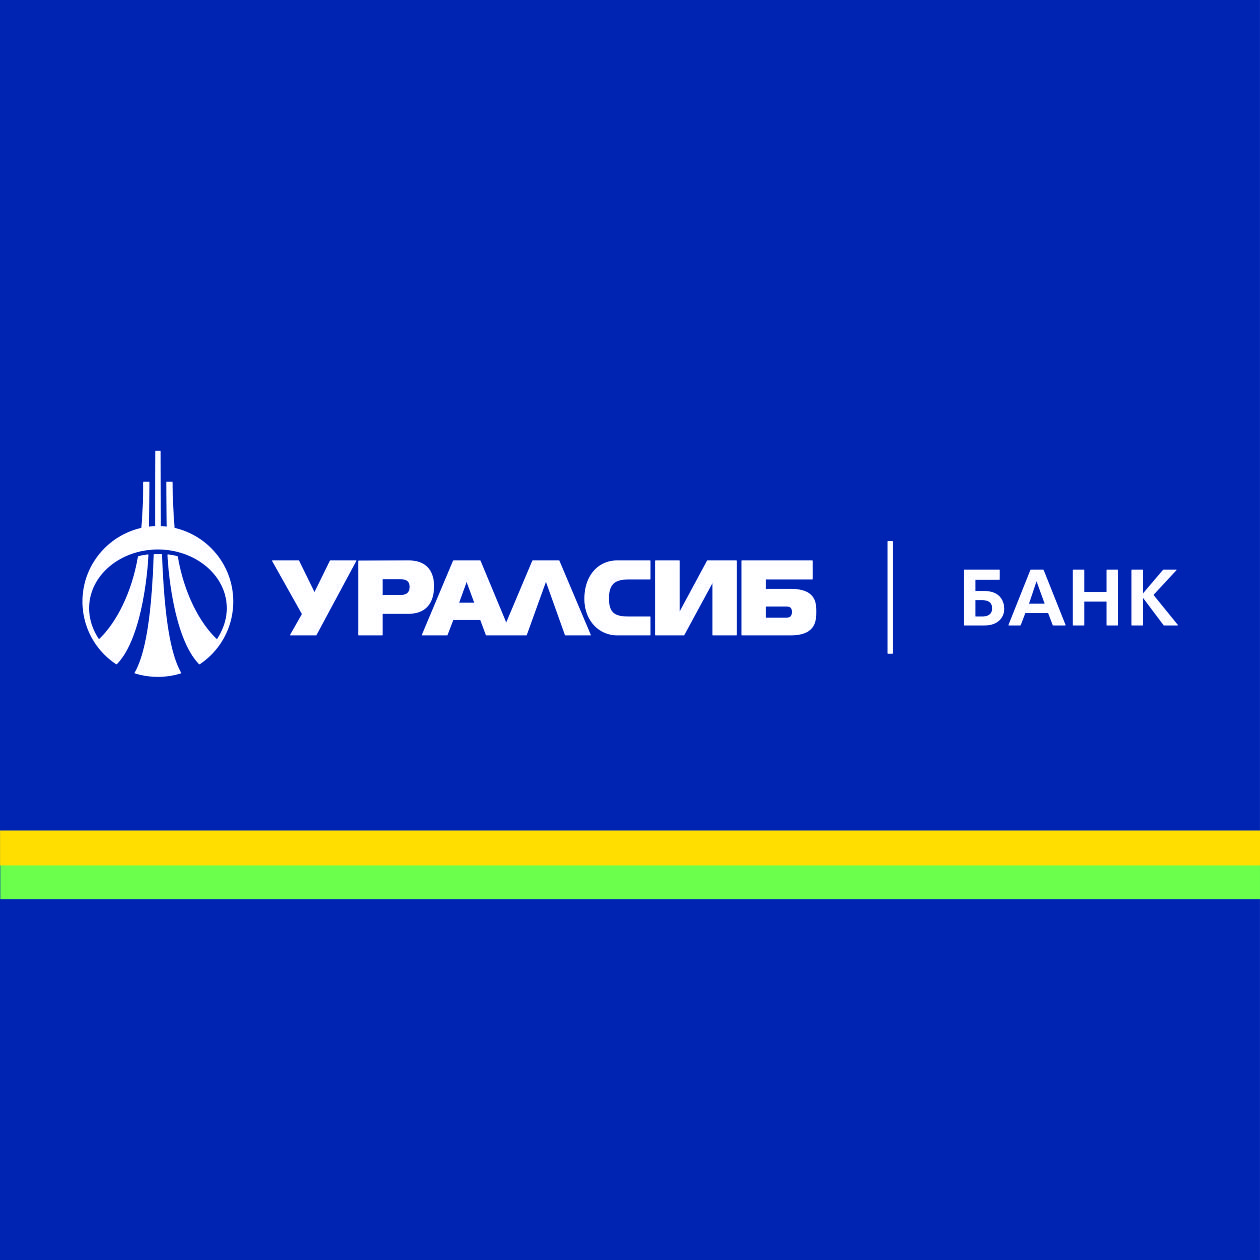 О режиме работы отделений Банка УРАЛСИБ в период с 28 марта по 5 апреля 2020 года